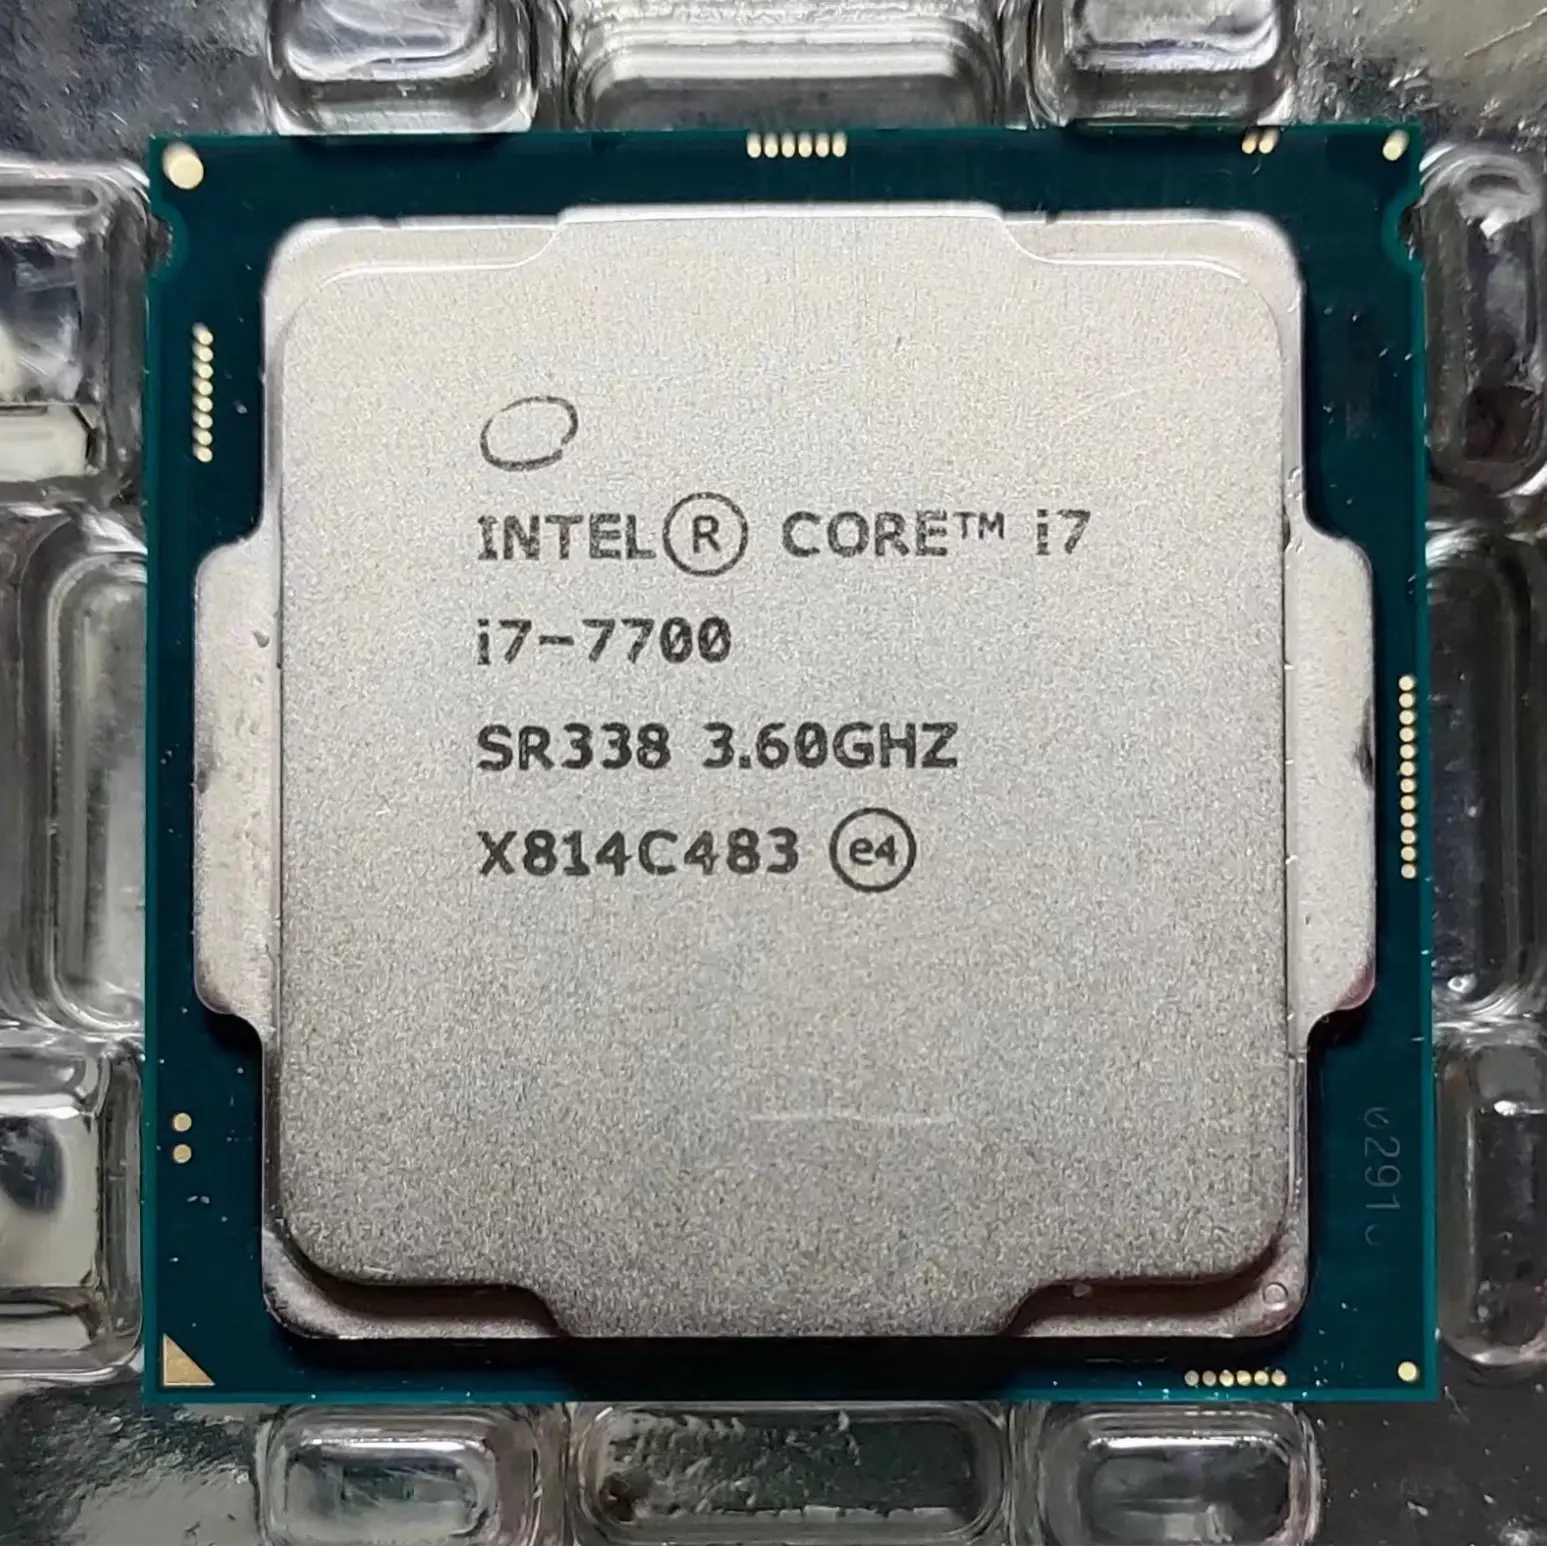 Inter CPU